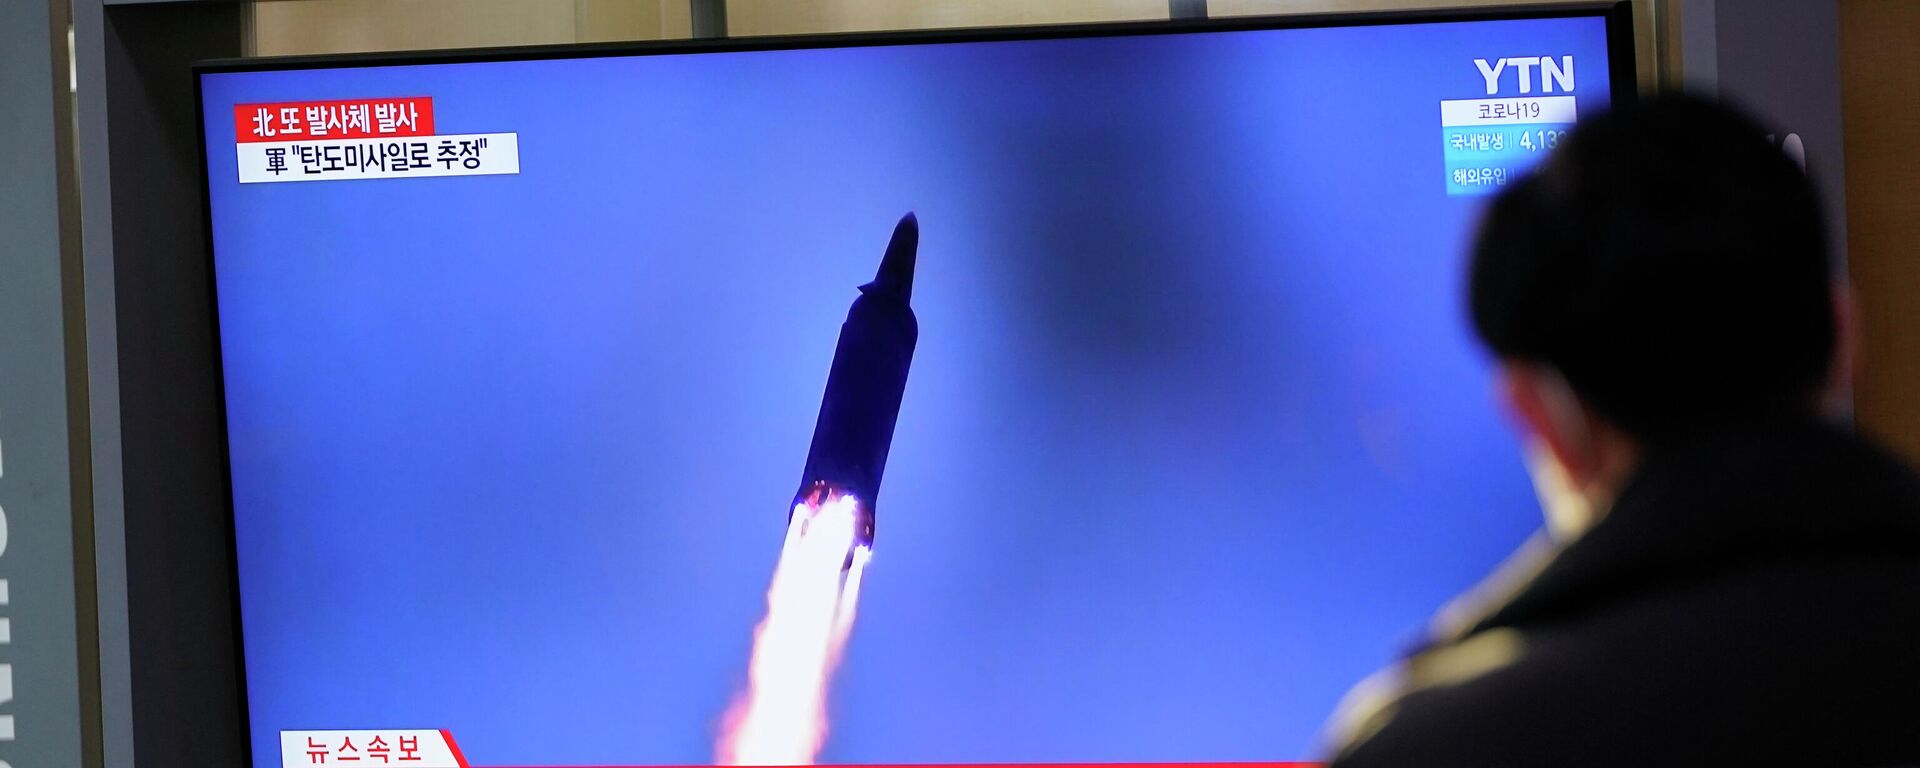 Una noticia en la televisión sobre la prueba de misiles de Corea del Norte (imagen referencial) - Sputnik Mundo, 1920, 27.03.2022